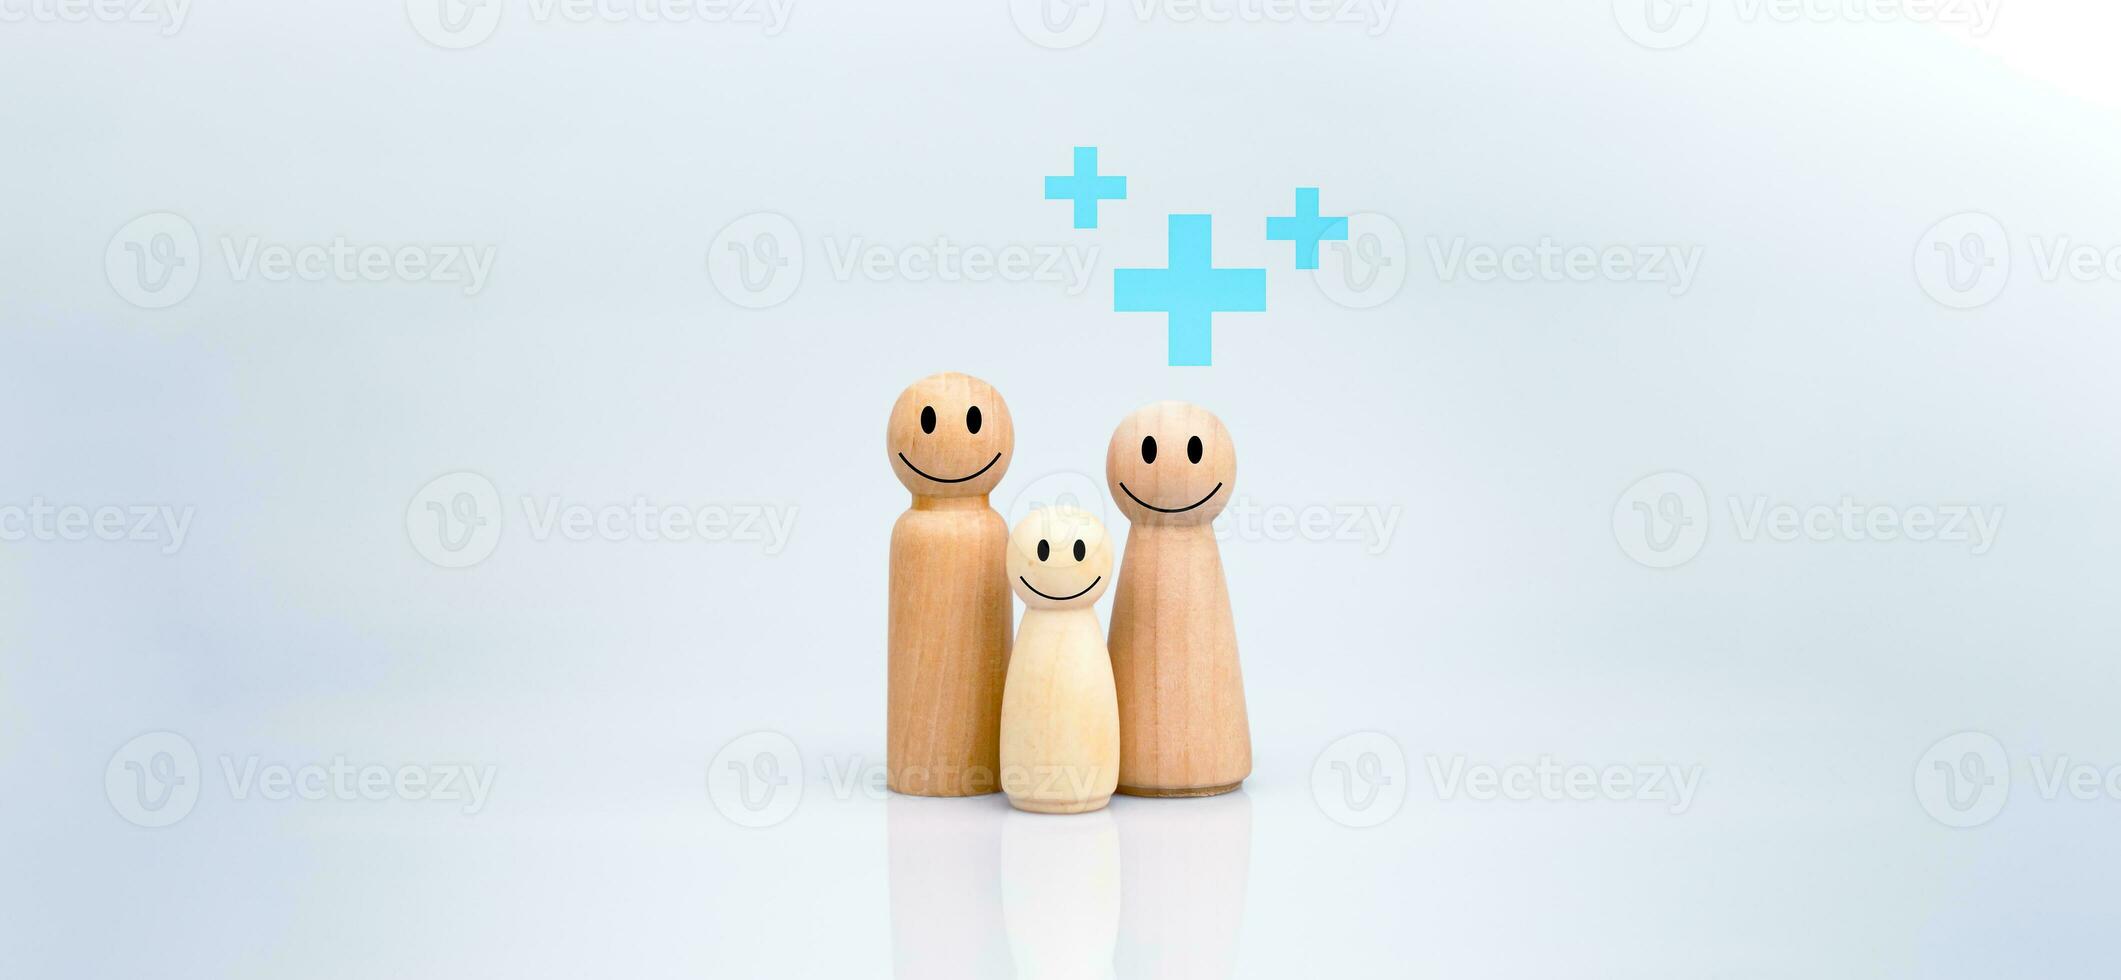 das Konzept von Gesundheit Versicherung und medizinisch Wohlfahrt. ein Familie von hölzern Puppen mit ein Plus Zeichen auf ein Weiß Hintergrund repräsentiert Schutz, Empfang Vorteile. Gesundheit Pflege Planung foto